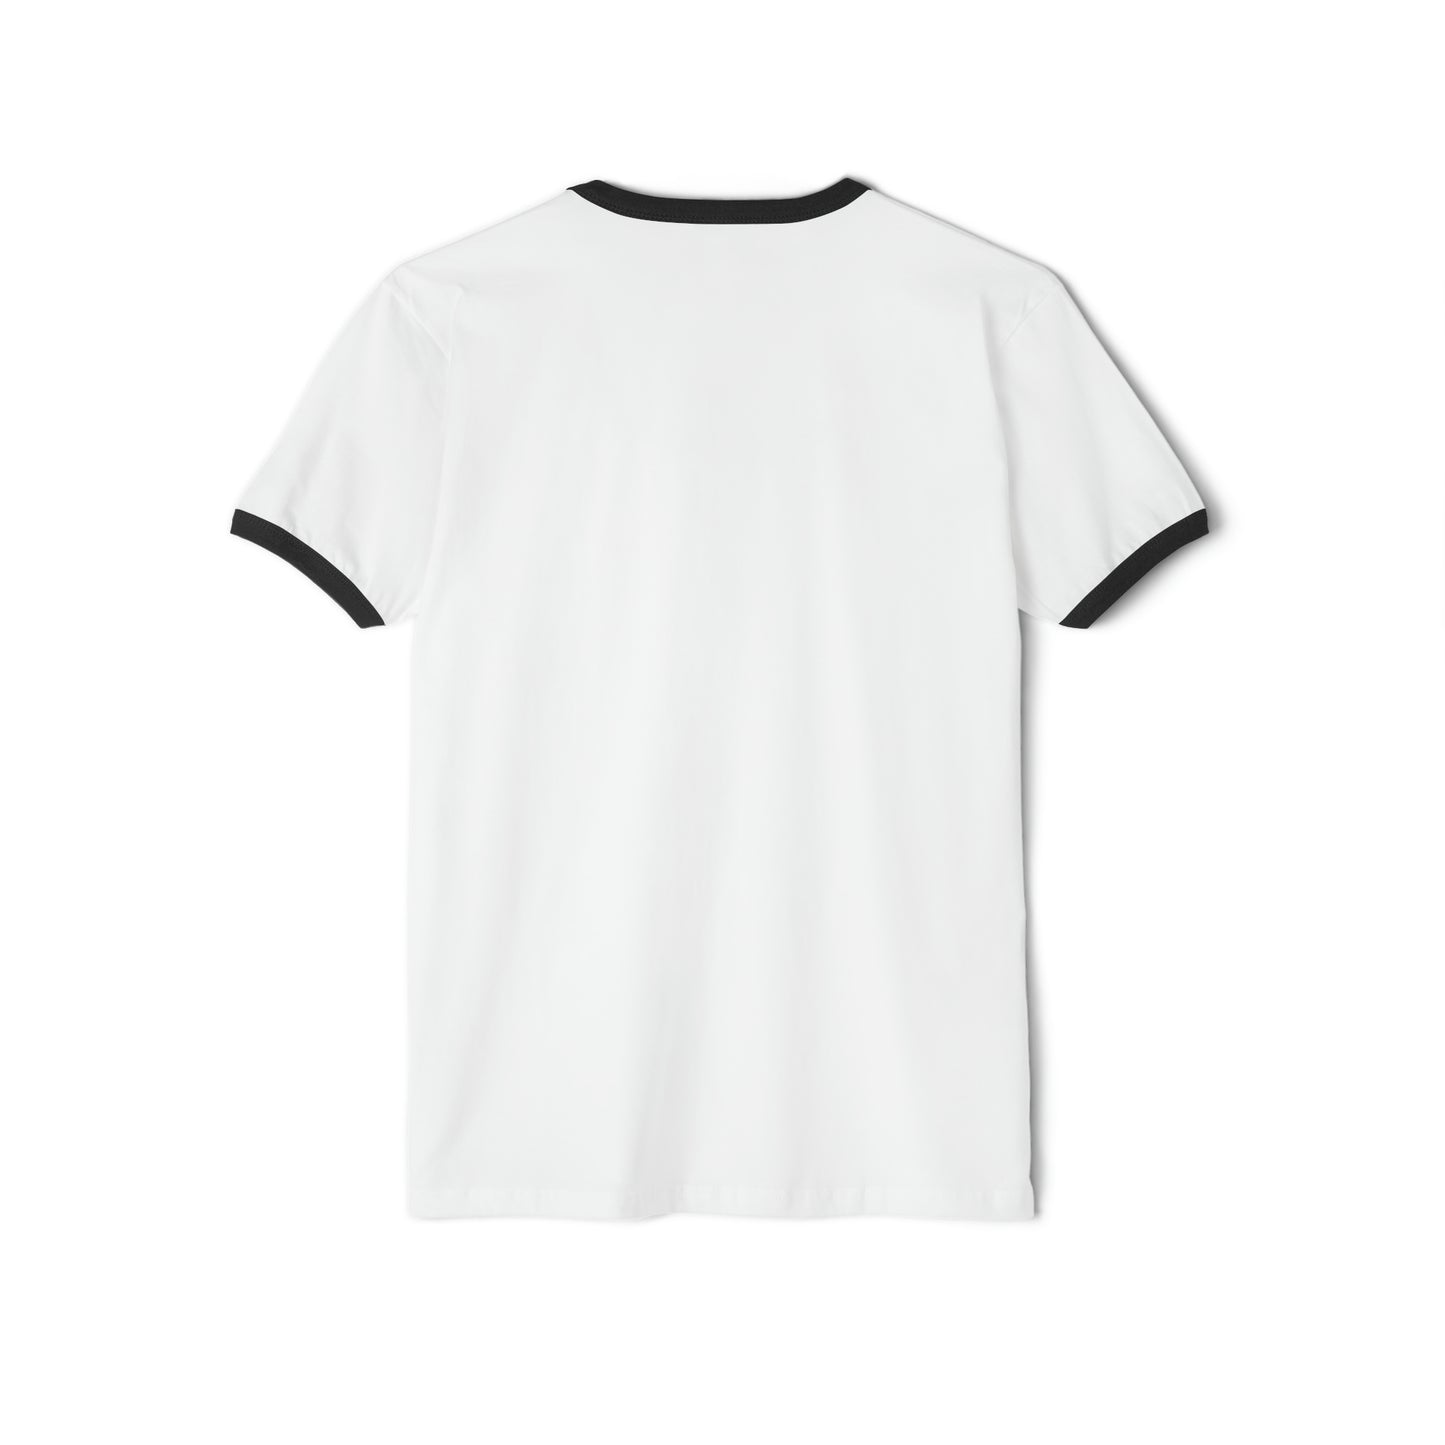 THÉ ORIGINAL by Dave Audé (Black on White) Unisex Cotton Ringer T-Shirt